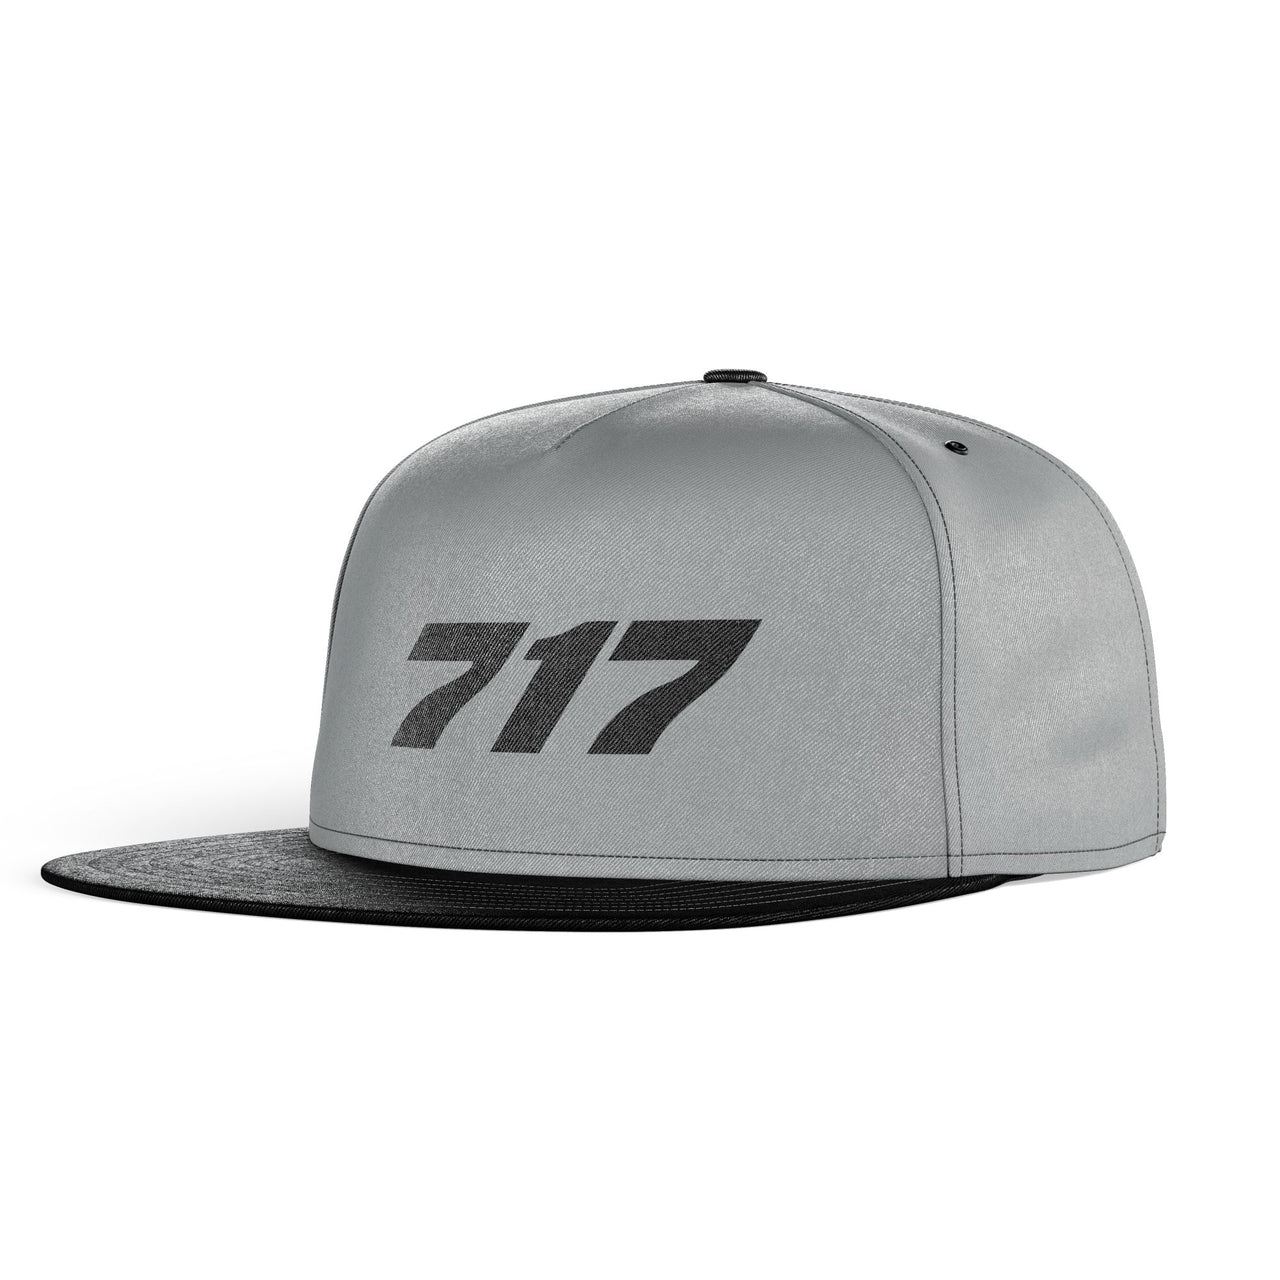 717 Flat Text Designed Snapback Caps & Hats